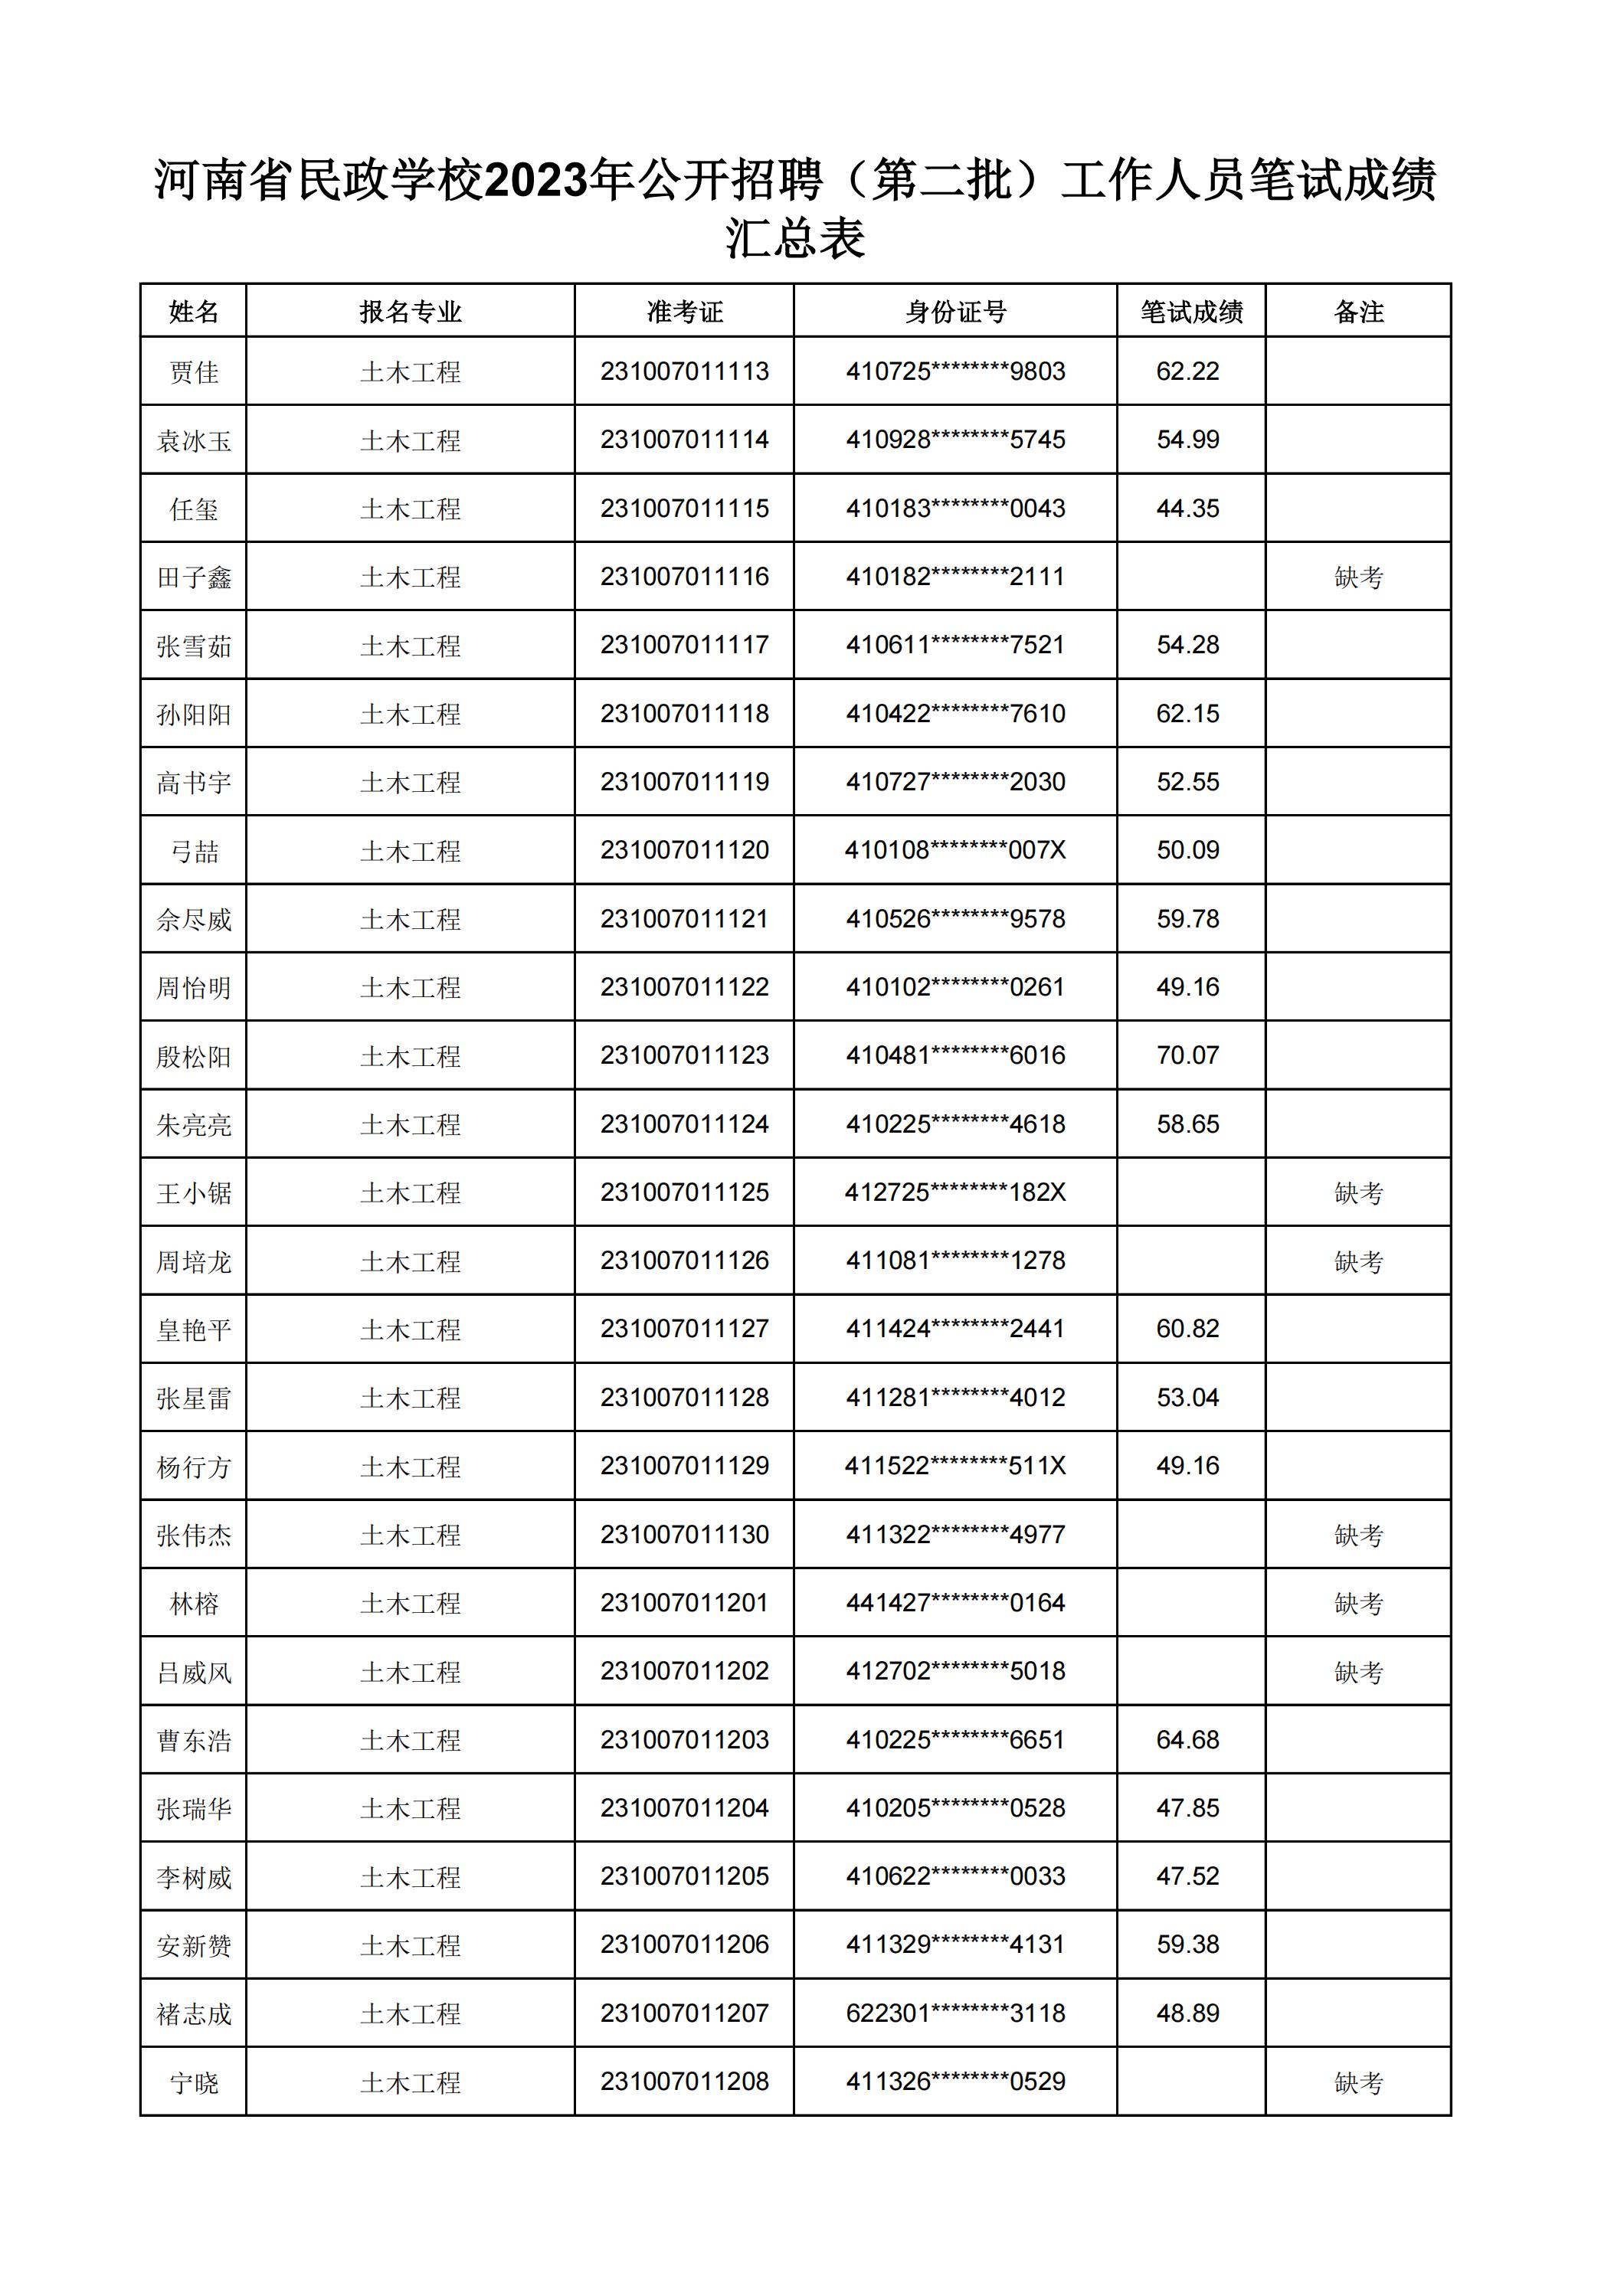 河南省民政学校2023年公开招聘（第二批）工作人员笔试成绩汇总表(2)_12.jpg